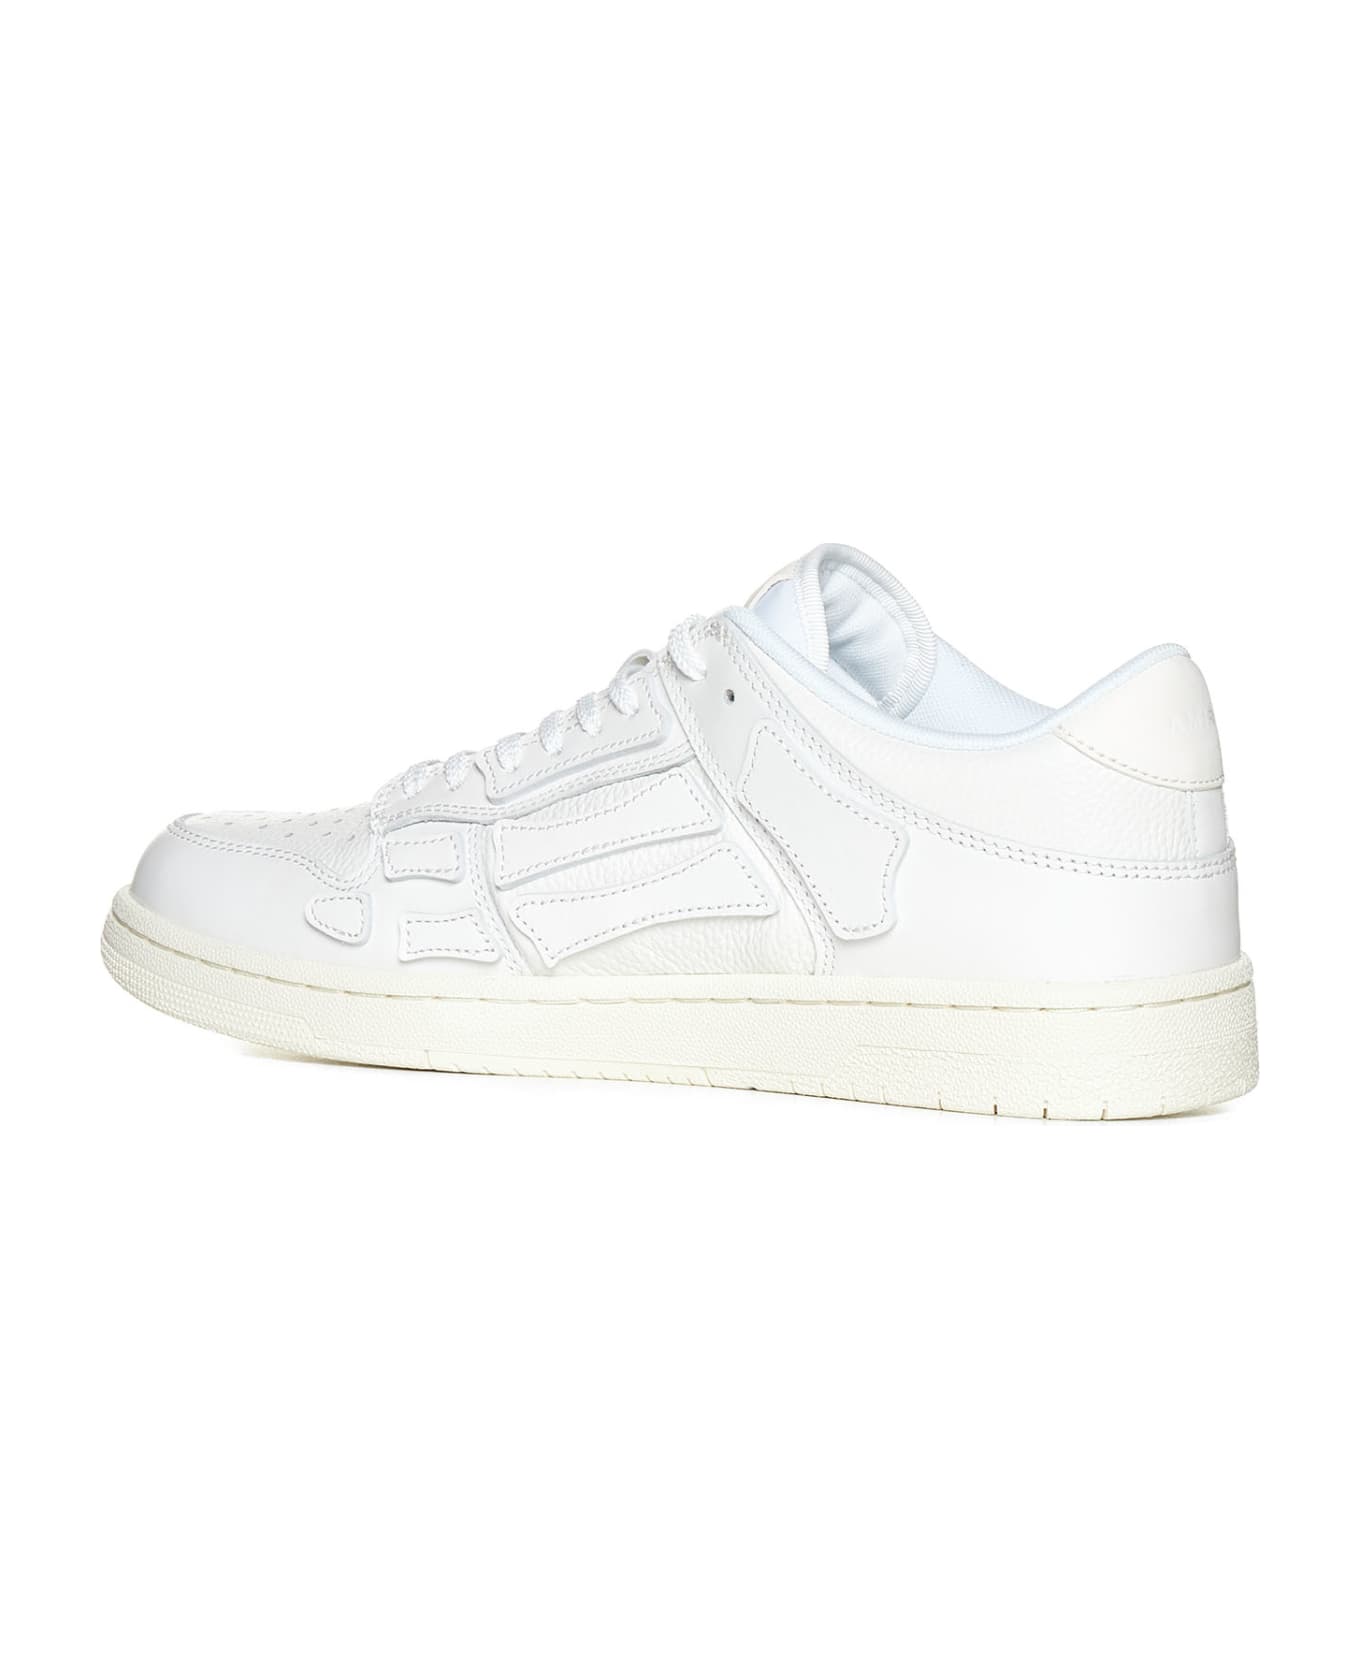 AMIRI Sneakers - White/white スニーカー